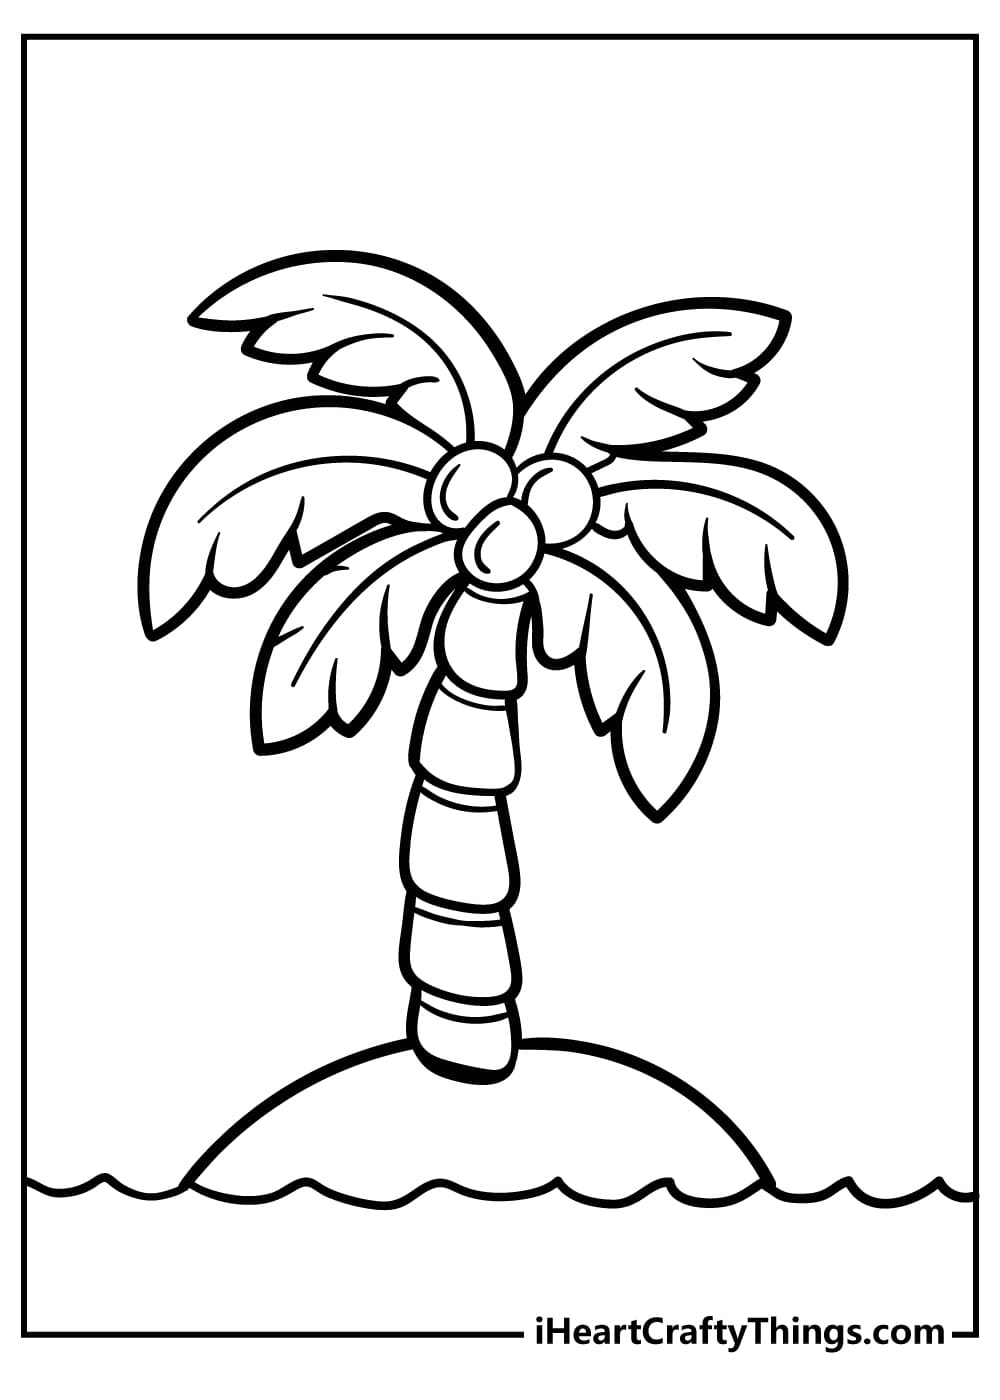 лист пальмы